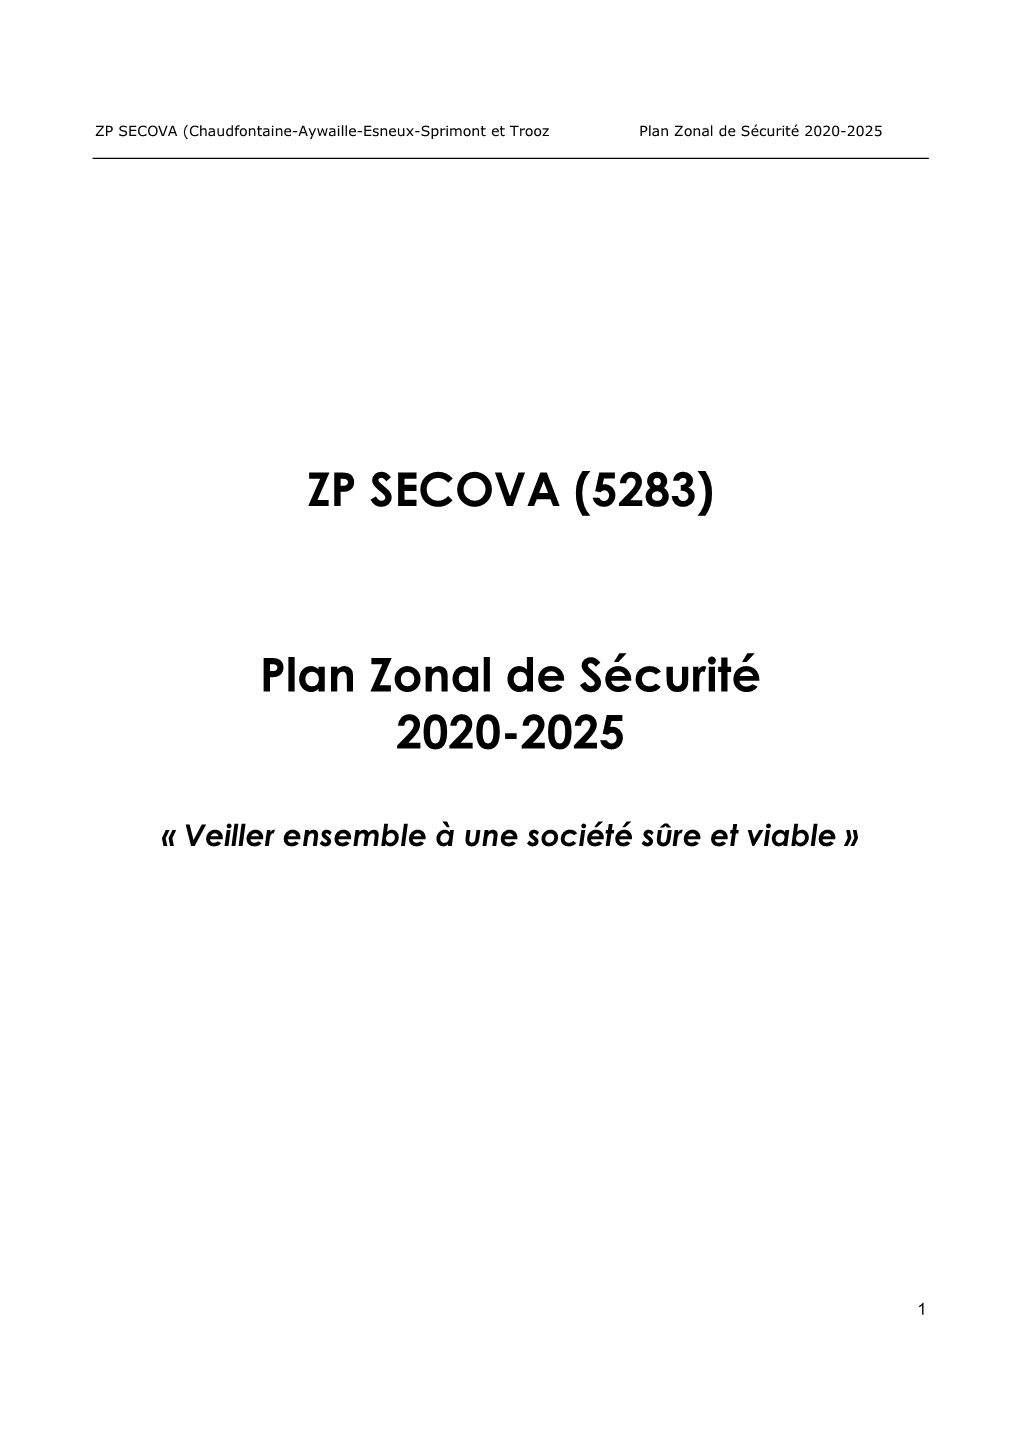 ZP SECOVA (5283) Plan Zonal De Sécurité 2020-2025